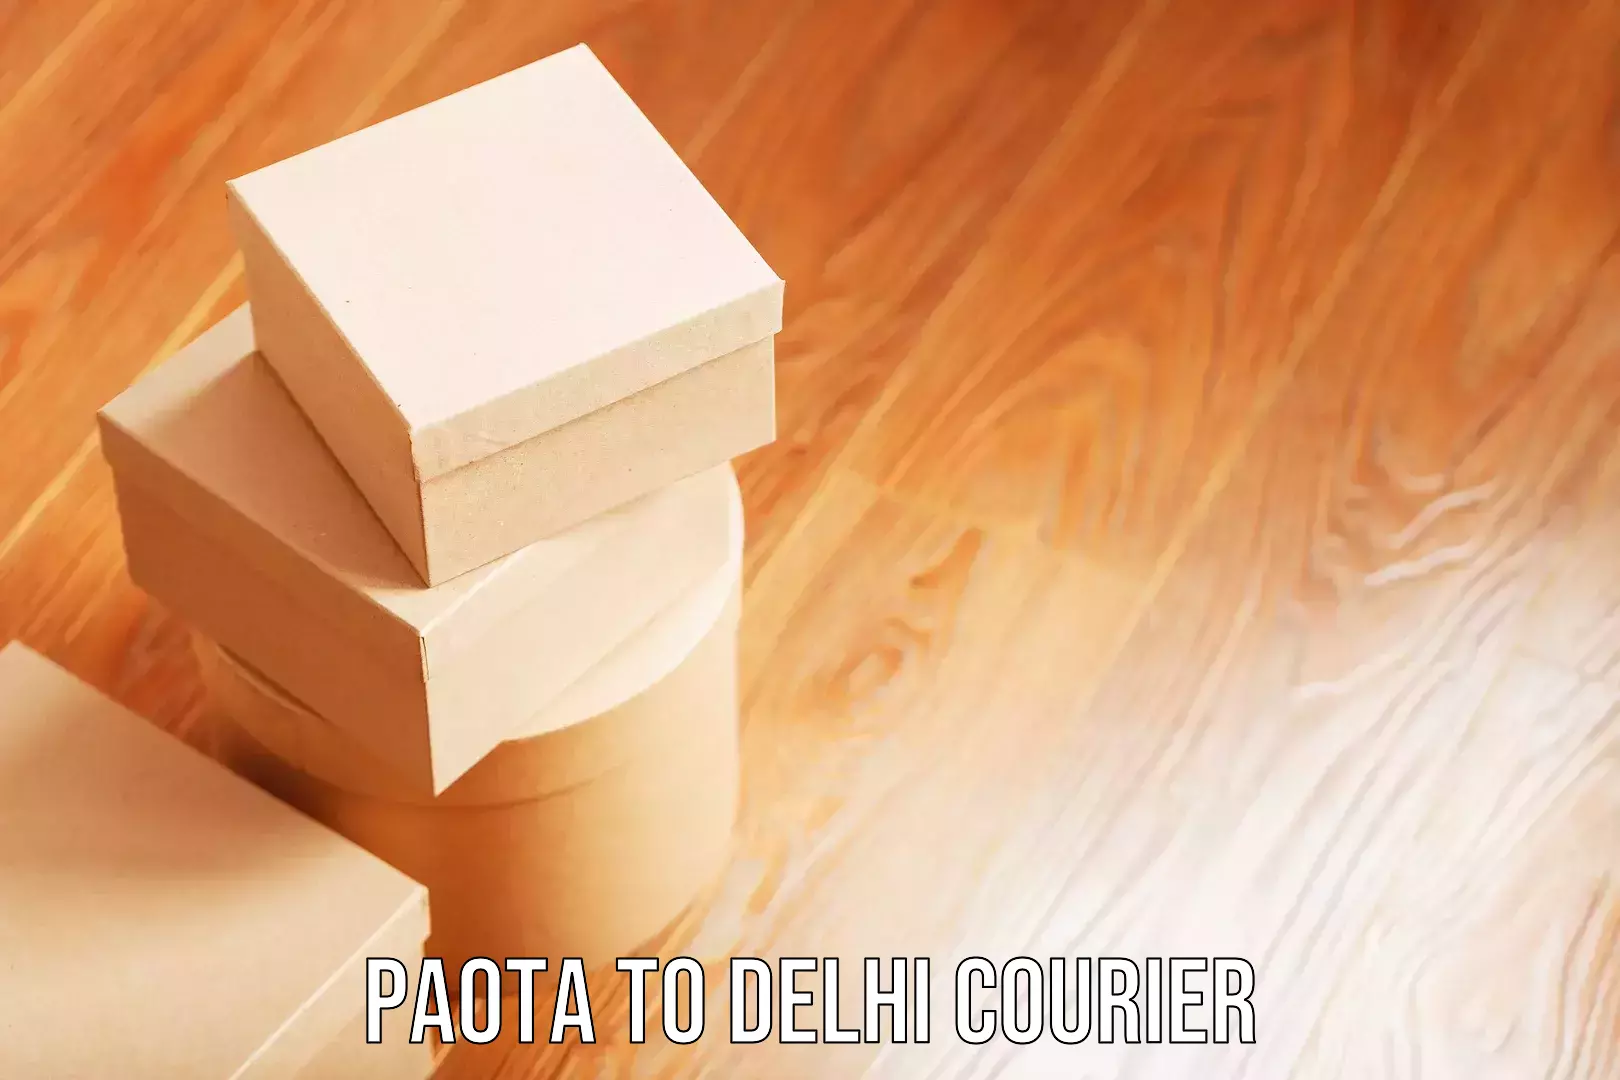 Door to door luggage delivery Paota to Delhi